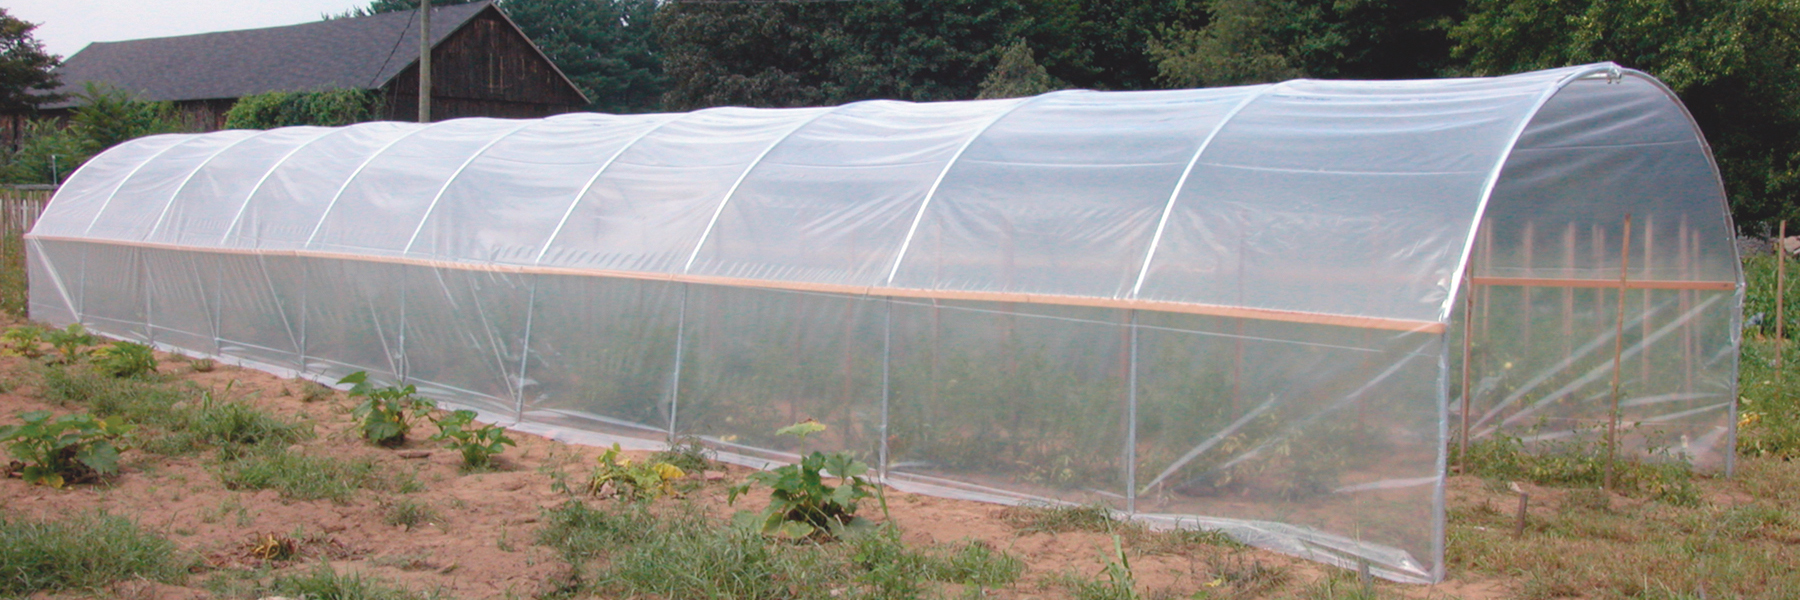 hoop greenhouses